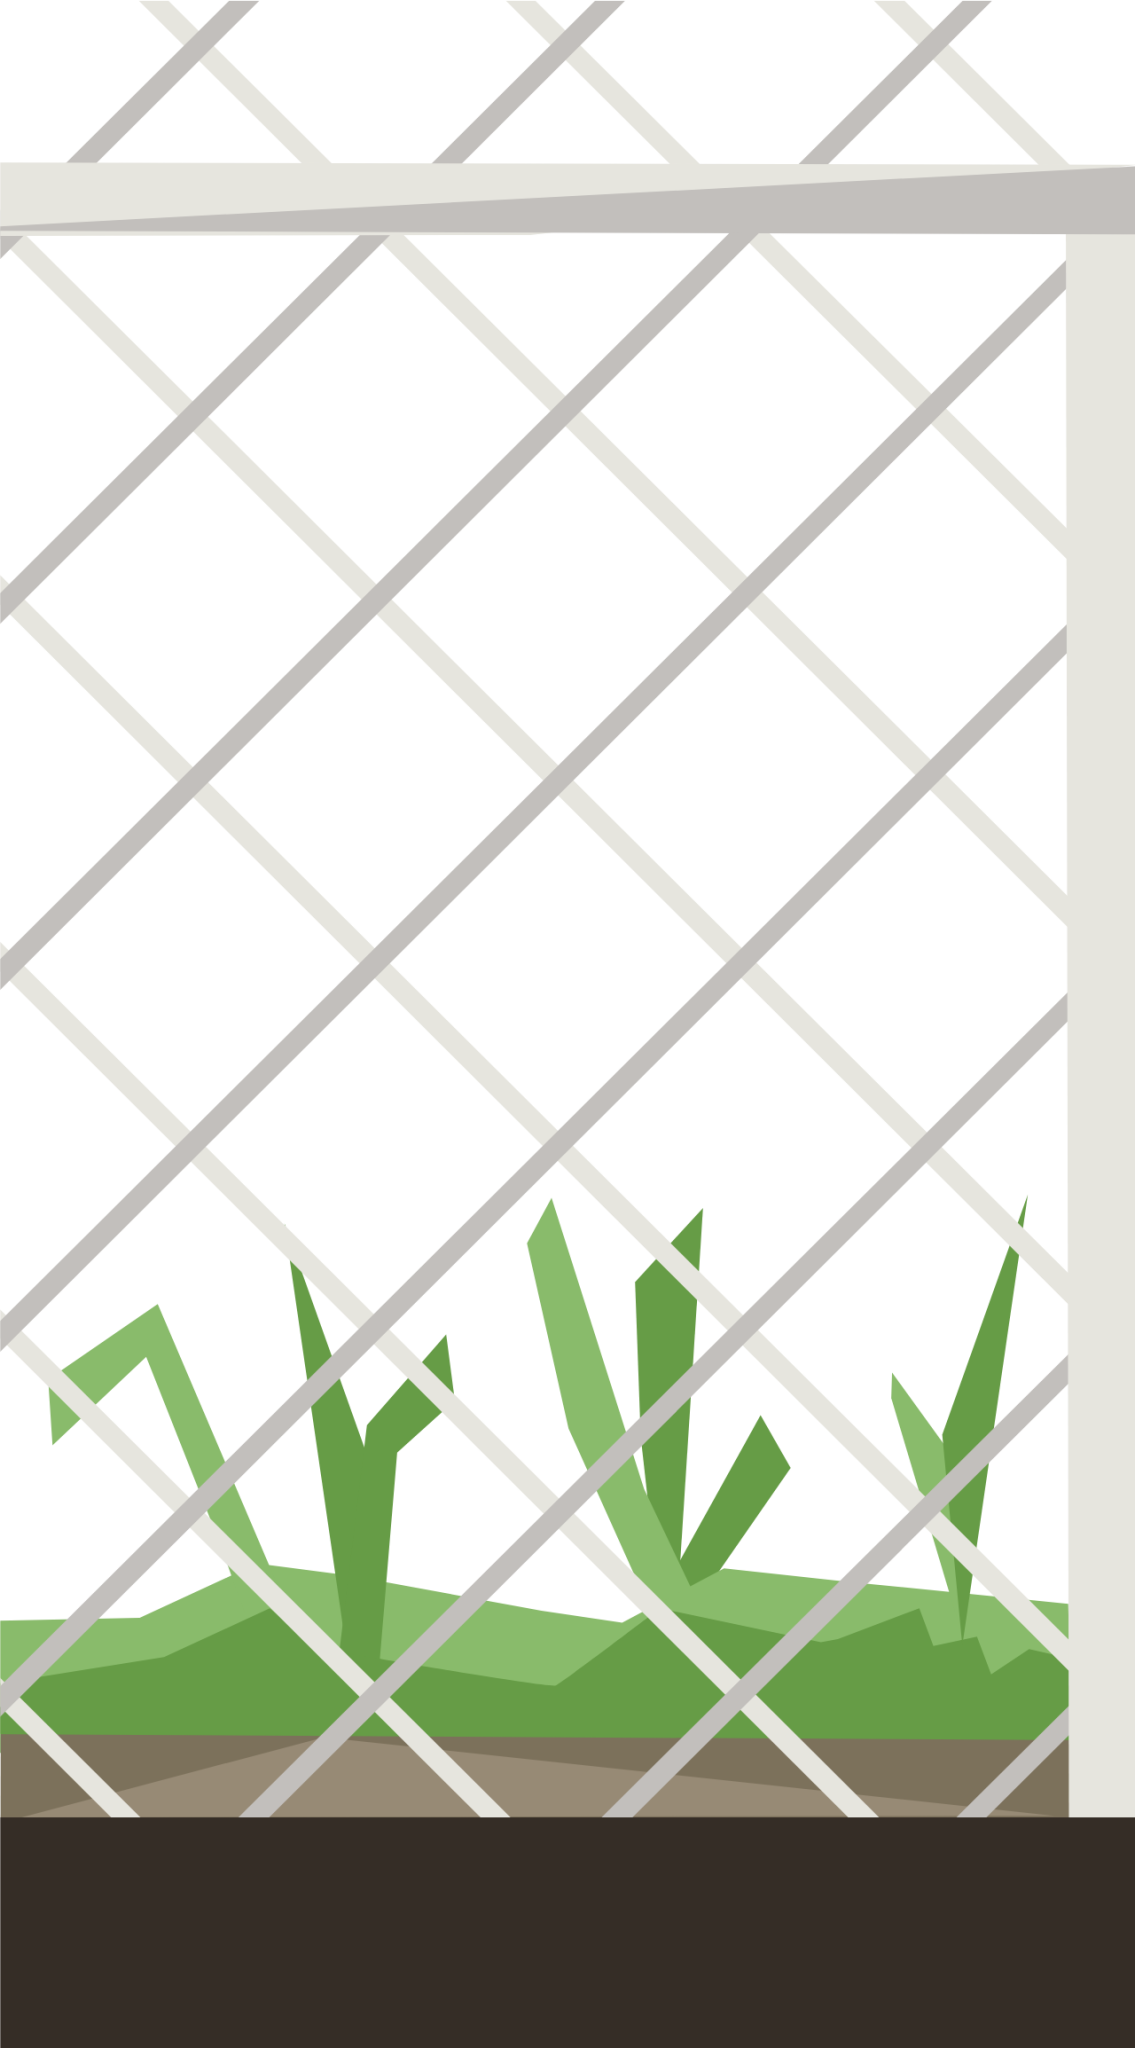 fenced lot left illustration